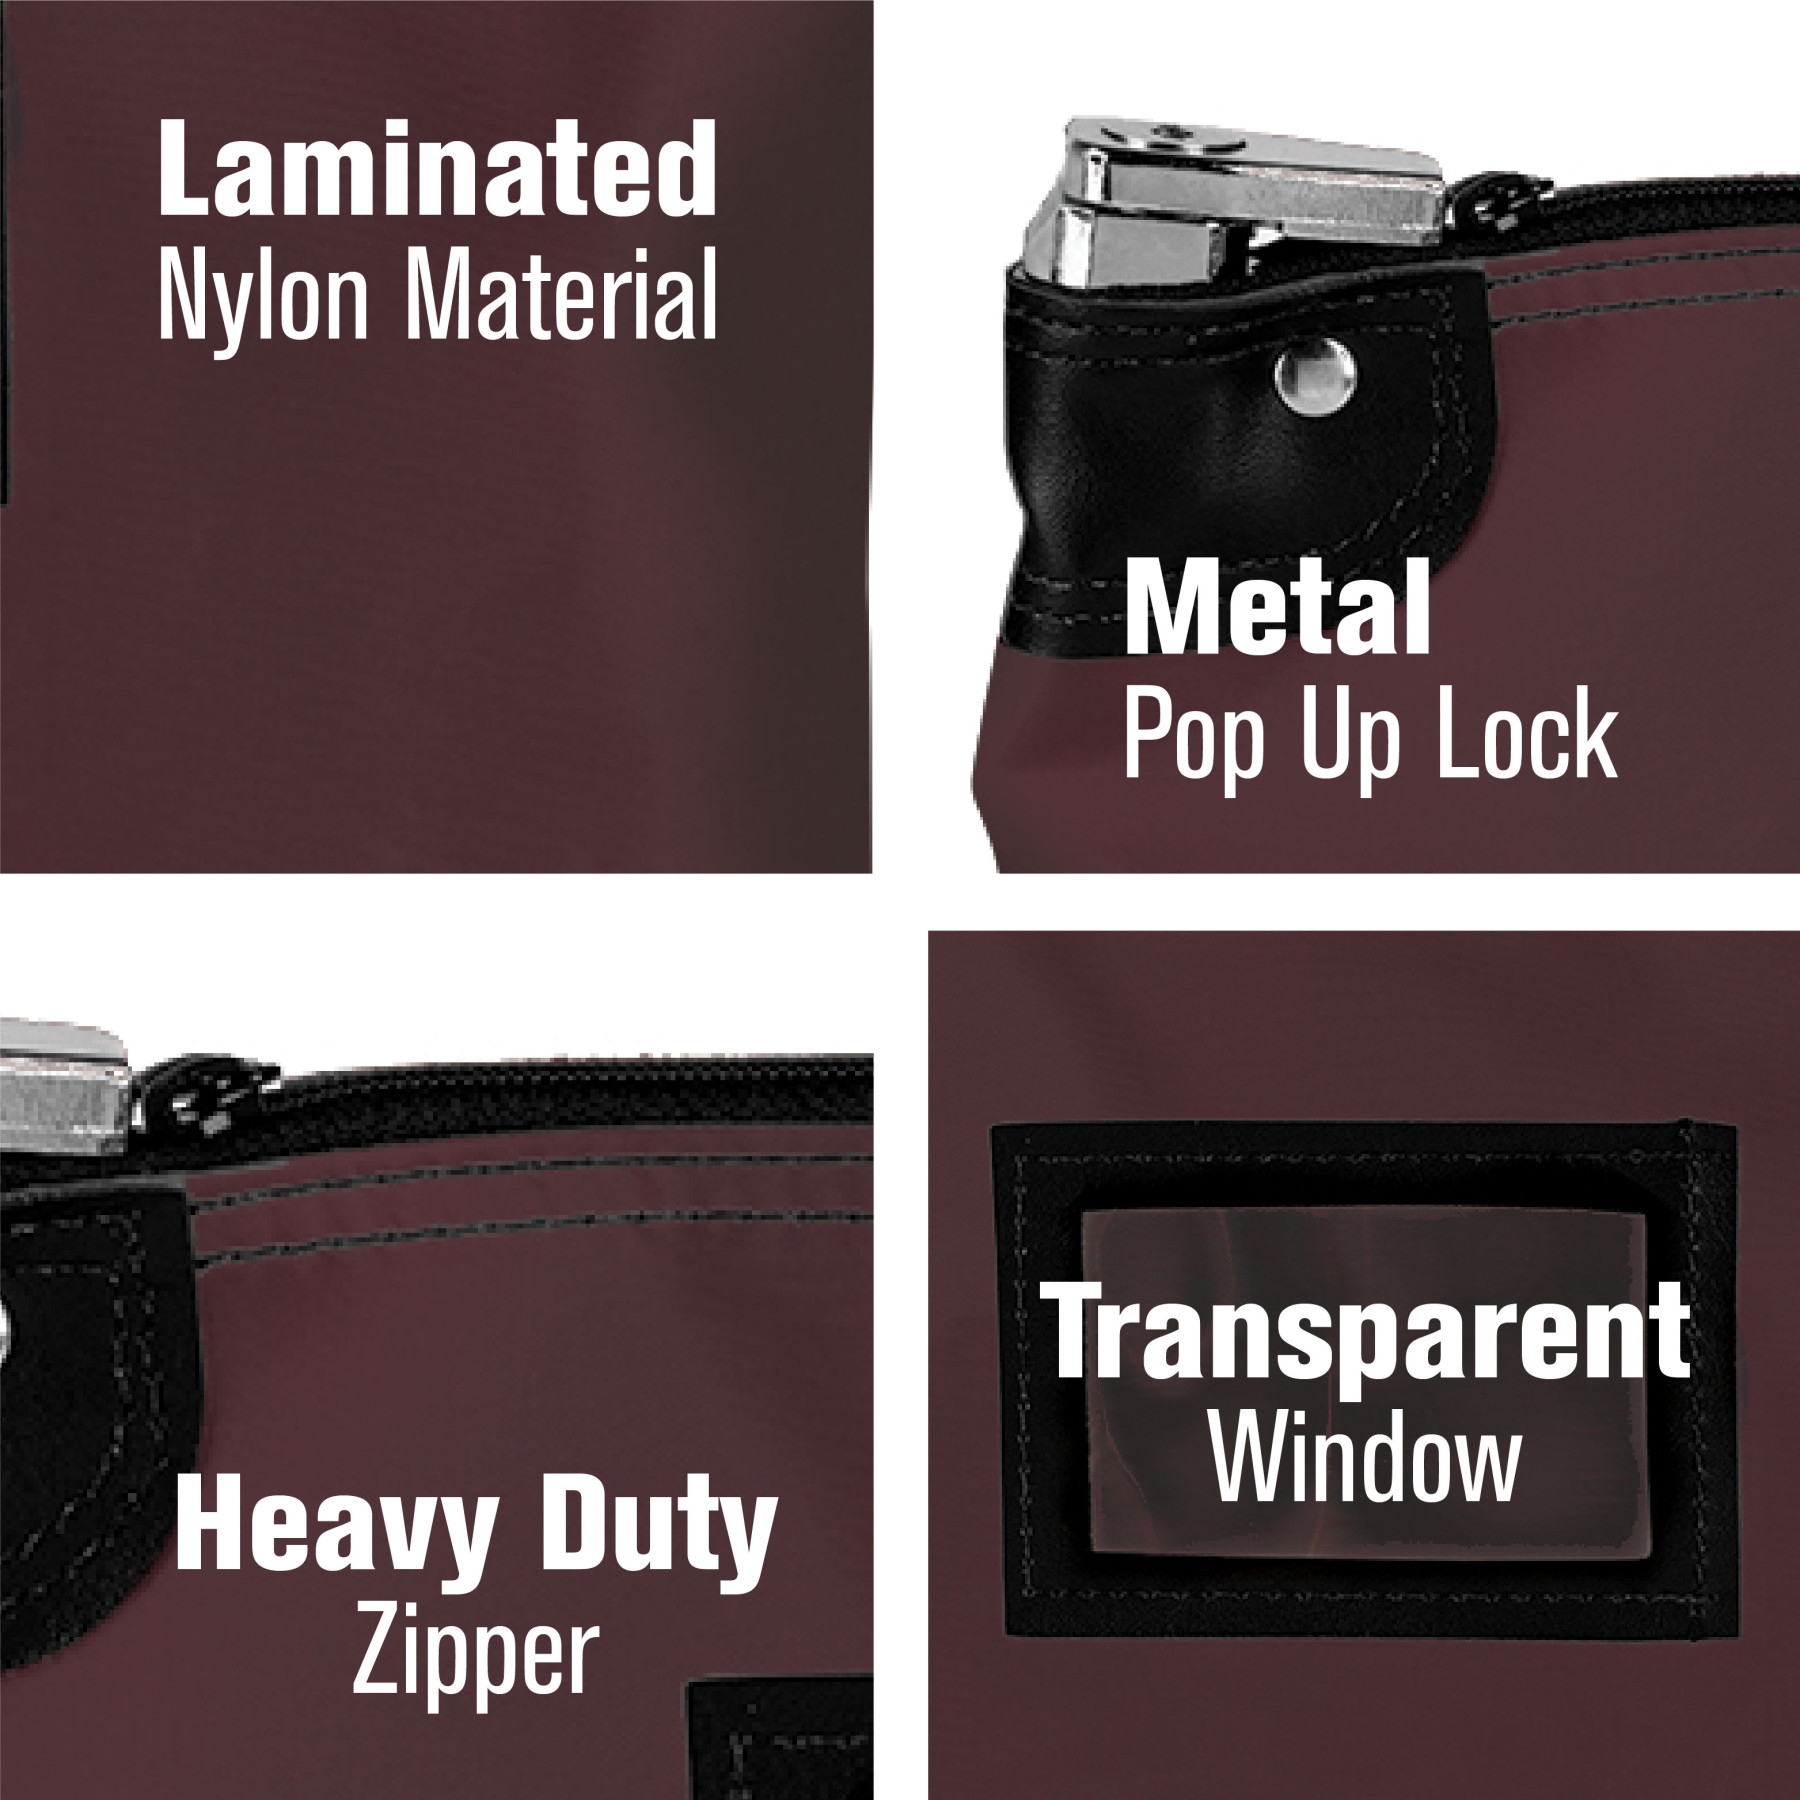 Burgundy Laminated Nylon Locking Deposit Bag - 15W x 11H details